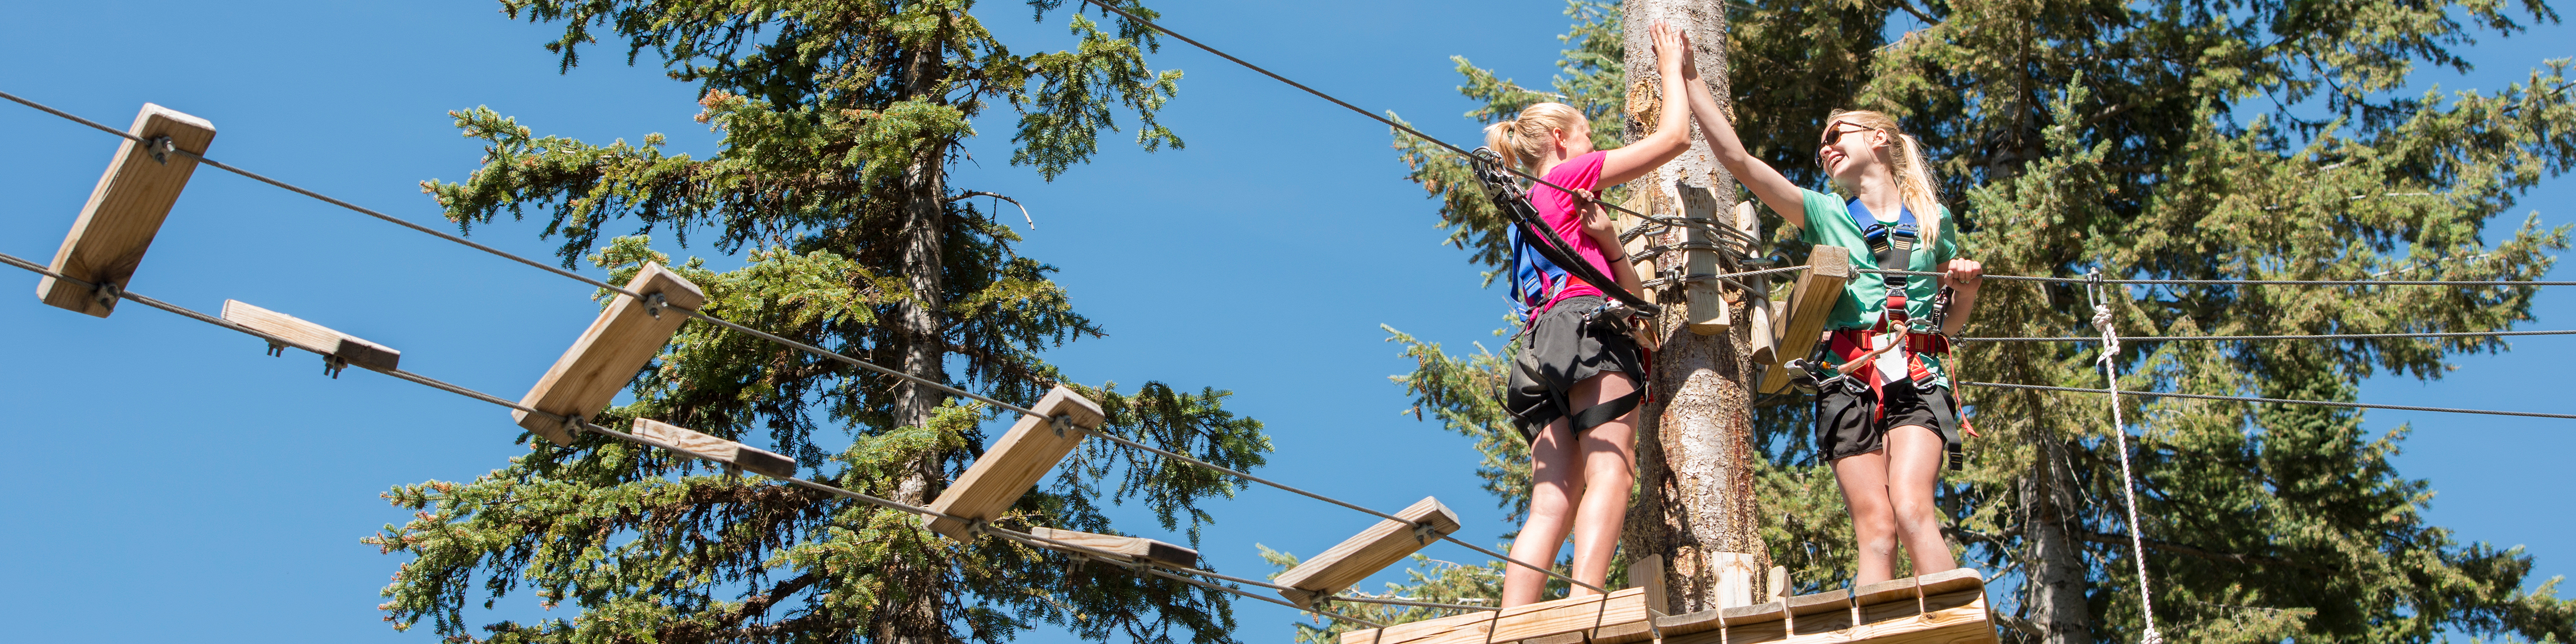 Teenage girls high five in aerial adventure park